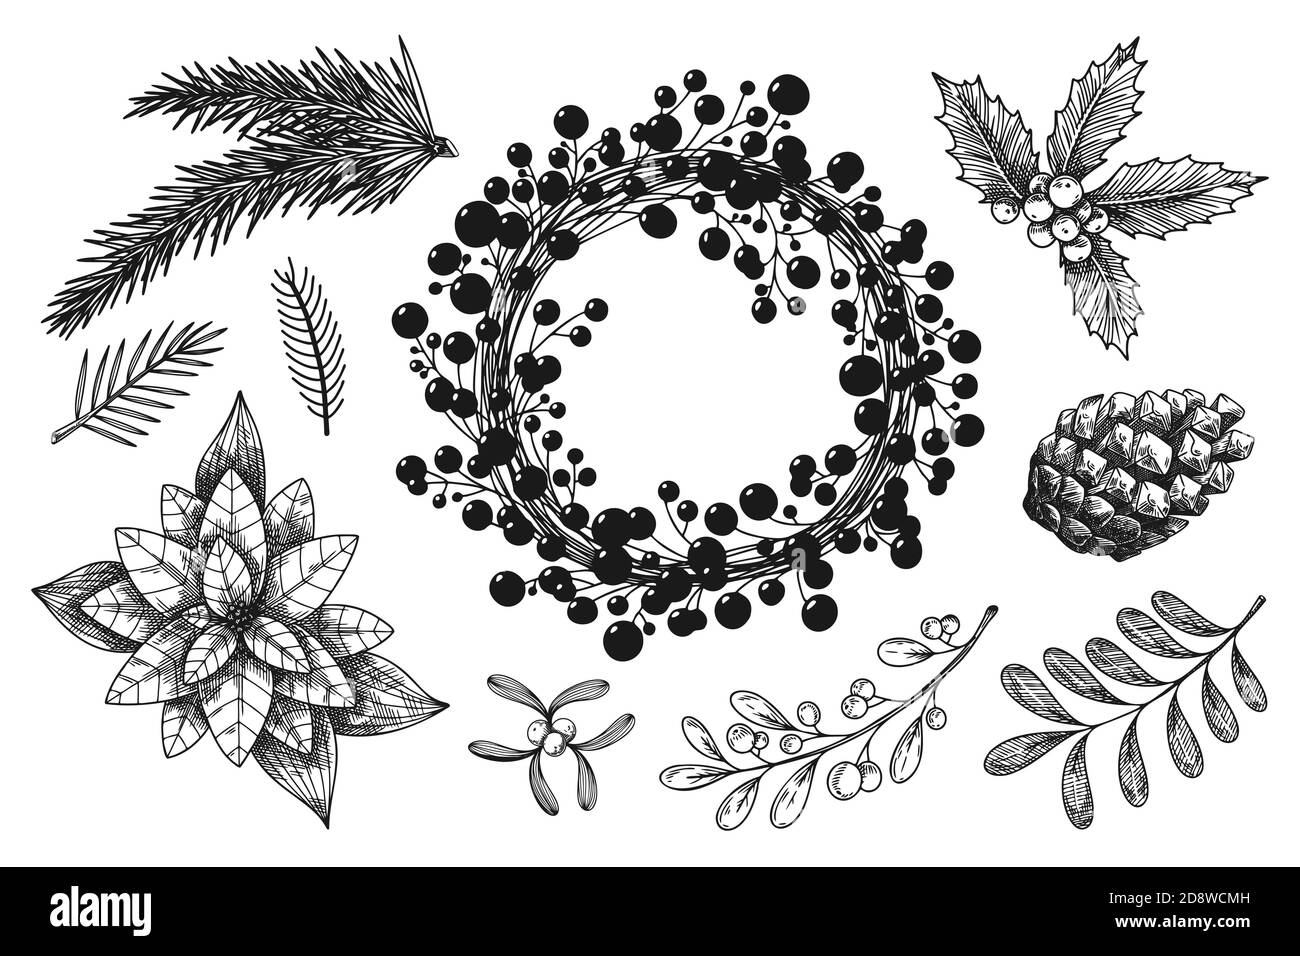 Corona de Navidad y ramas de diferentes plantas aisladas sobre fondo blanco. Dibujo, ilustración a mano Ilustración del Vector